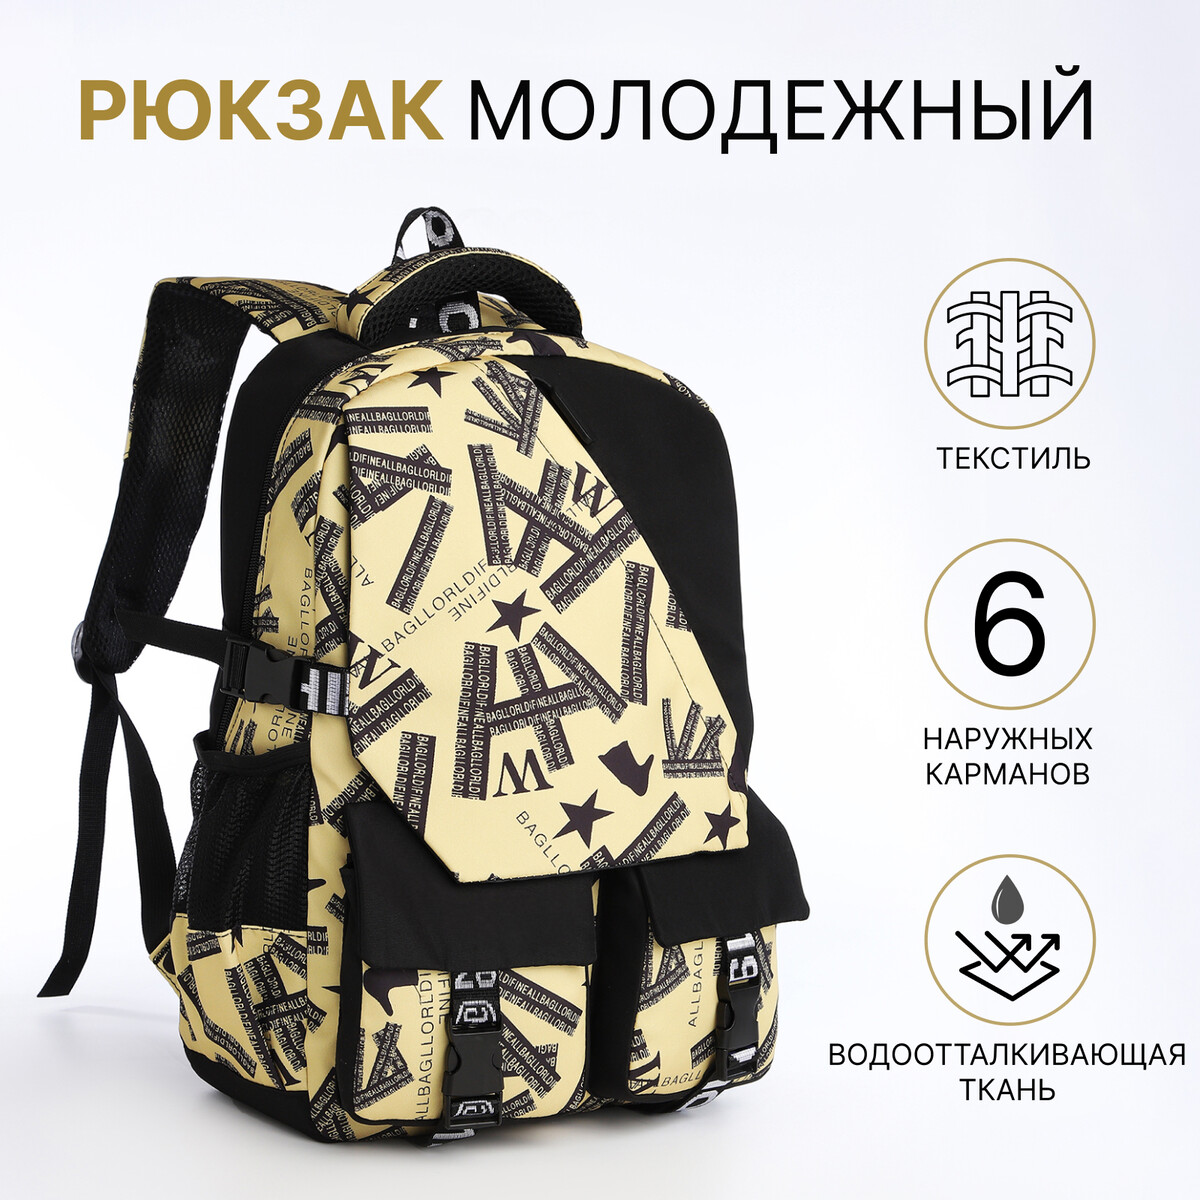 Рюкзак школьный на молнии, 5 карманов, цвет черный/желтый рюкзак текстильный с карманом желтый 22х13х30 см